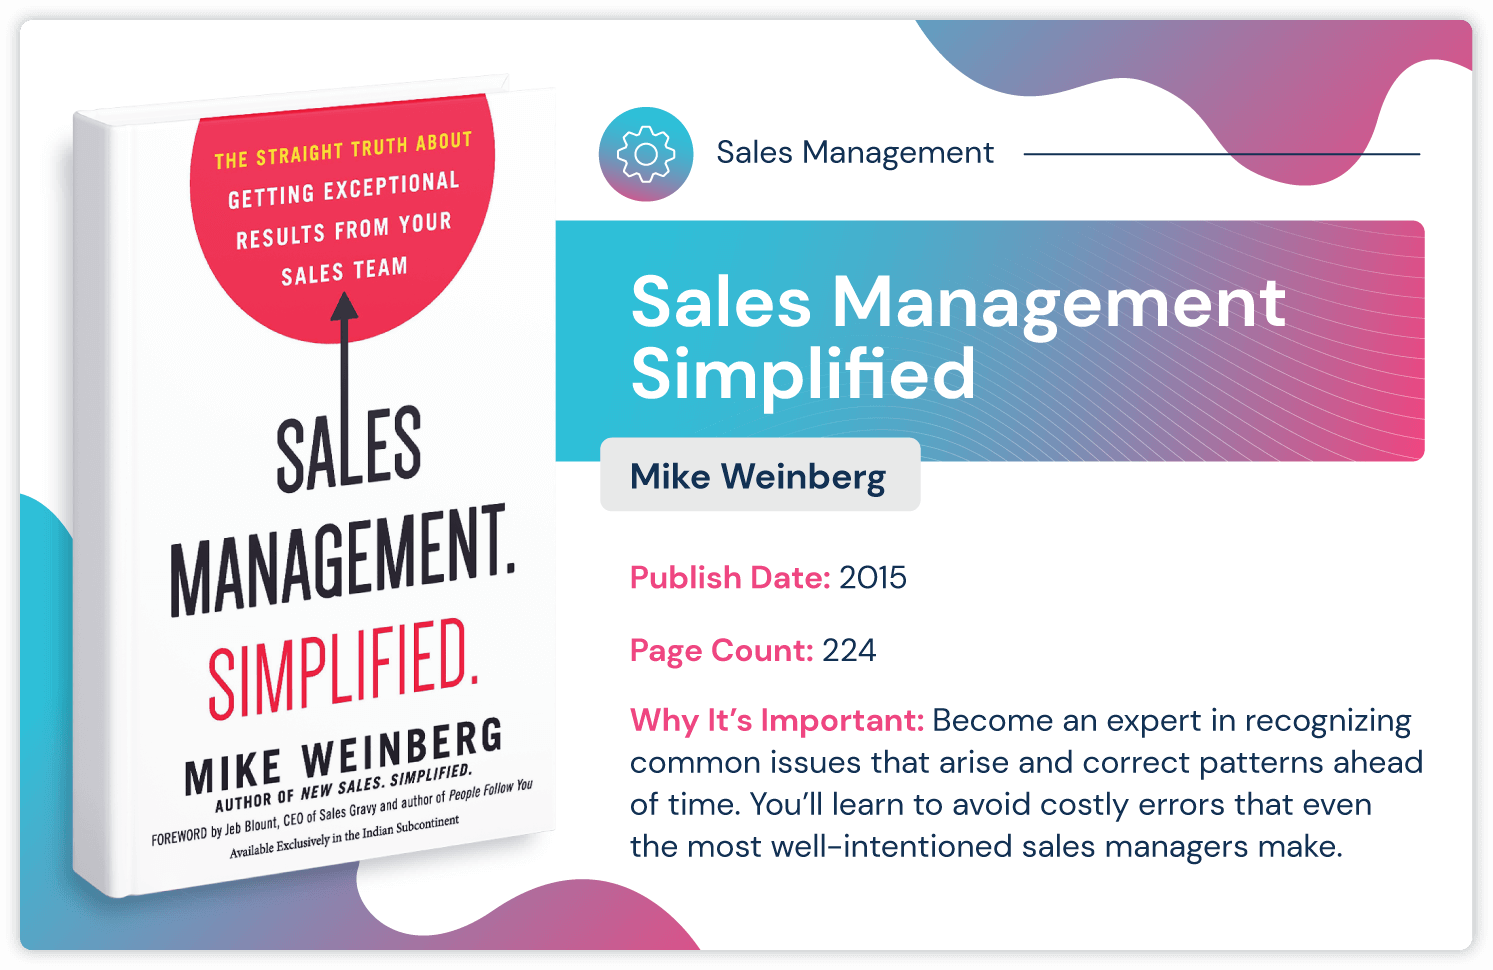 コストのかかる販売管理エラーの回避について、Mike Weinberg が簡素化した「Sales Management Simplified」という販売管理の本。2015 年に発行され、224 ページの長さです。